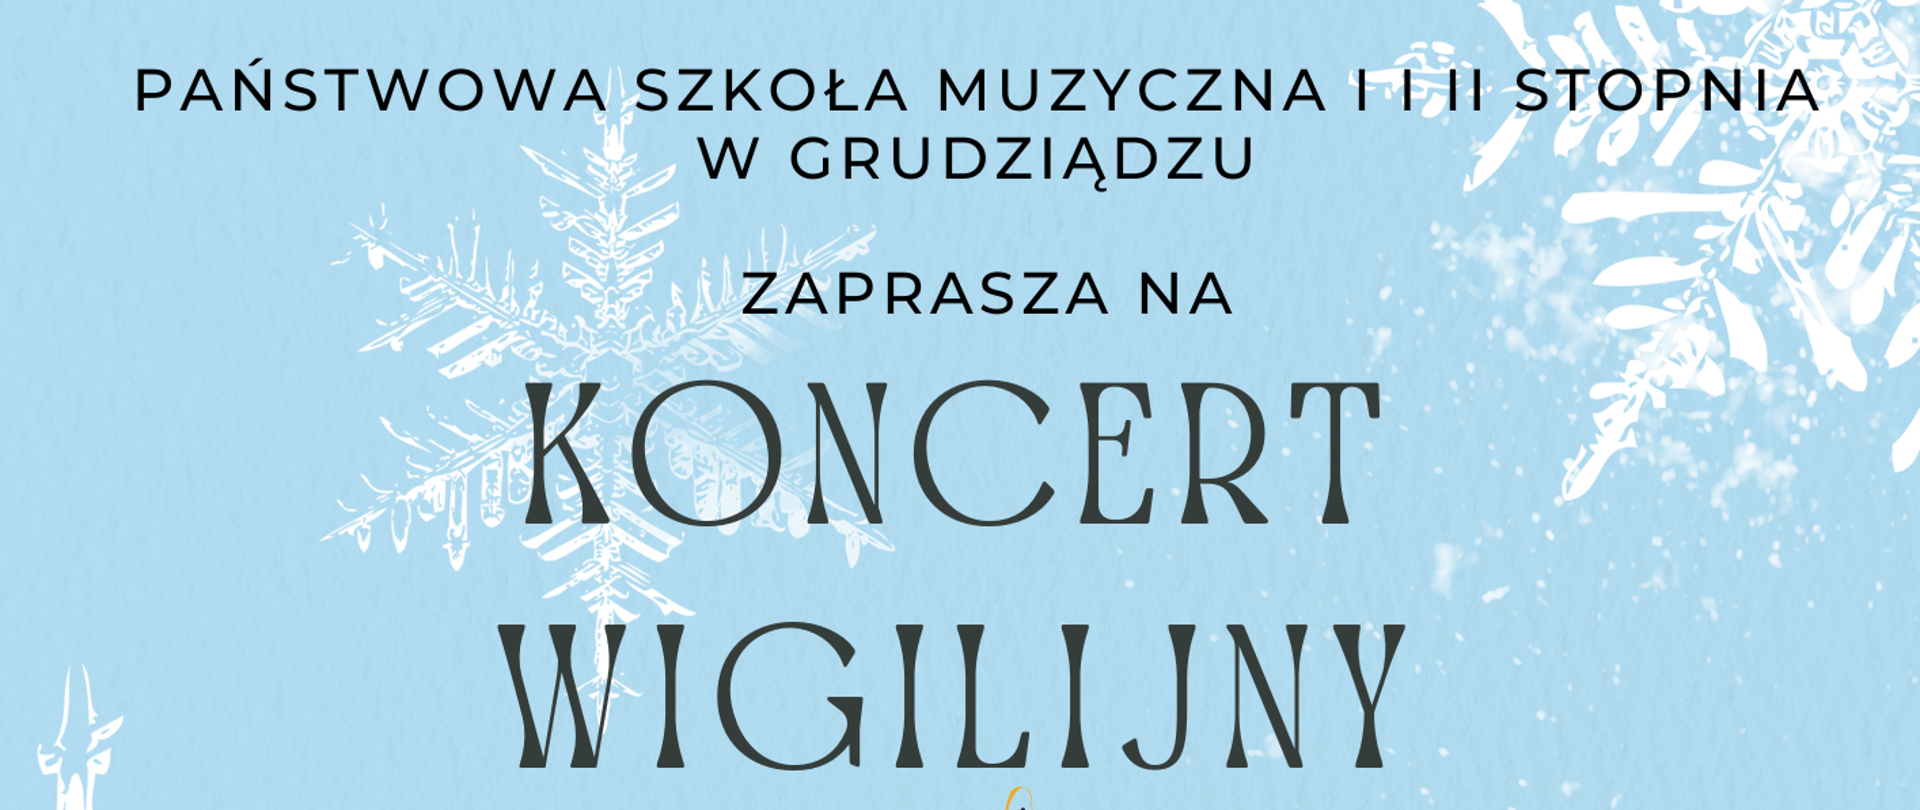 Plakat w kolorze błękitnym na którym widać zieloną choinkę i ozdobne białe śnieżynki informujący o koncercie wigilijnym w auli PSM w Grudziądzu w środę 21 grudnia o godz. 17